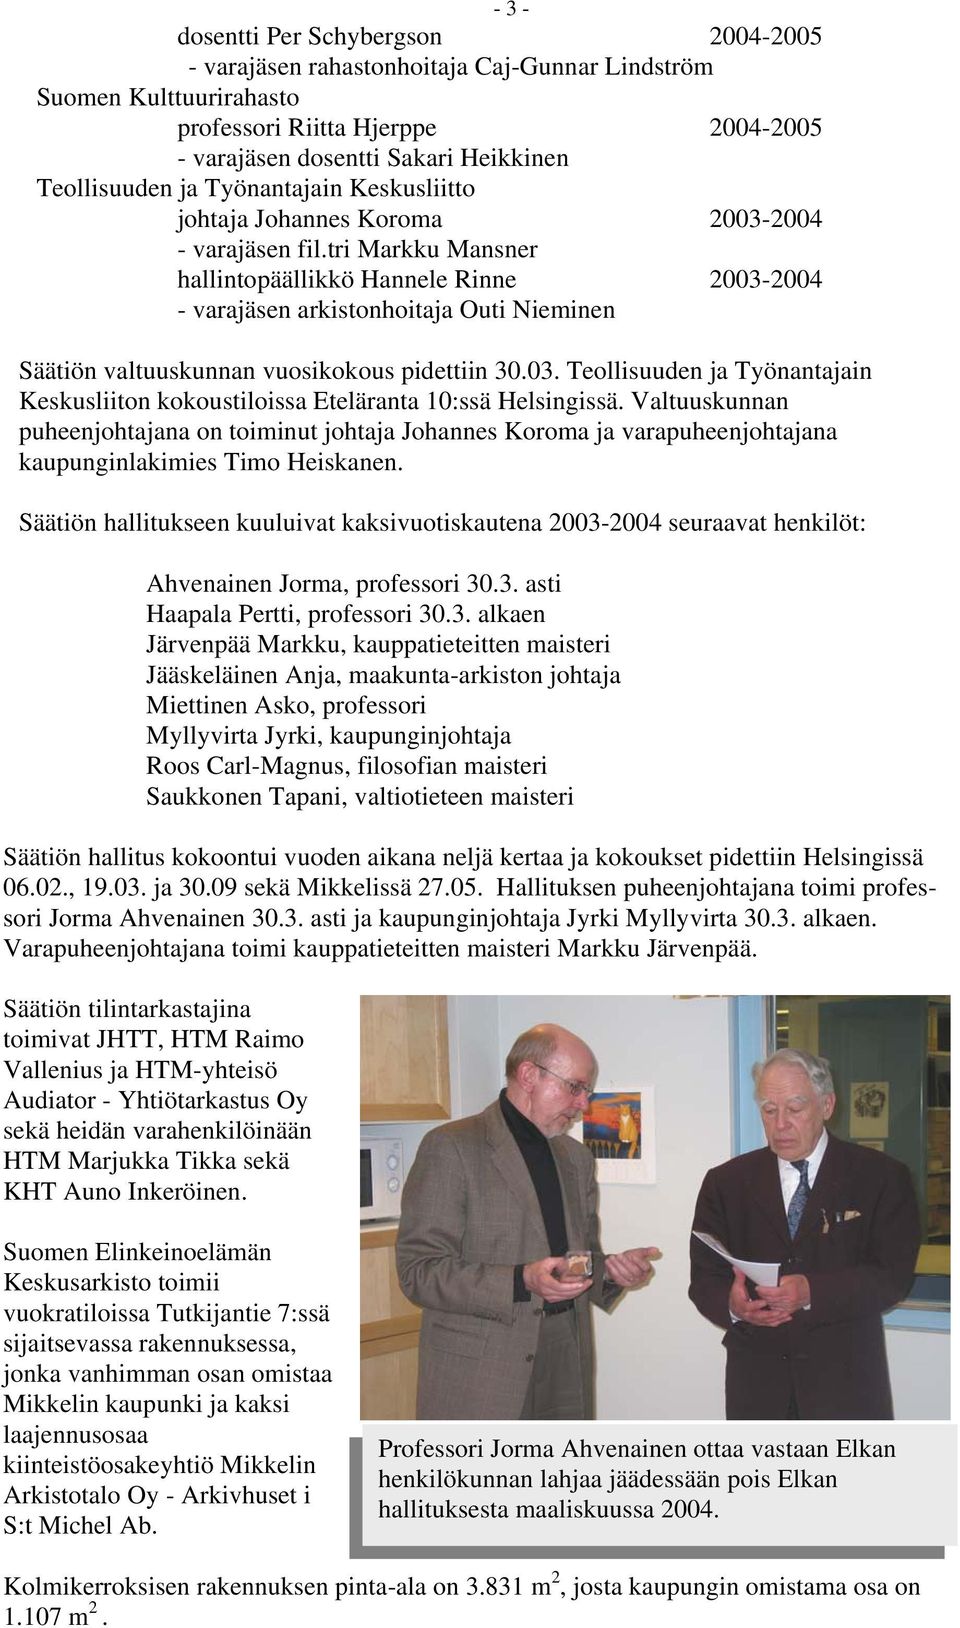 tri Markku Mansner hallintopäällikkö Hannele Rinne 2003-2004 - varajäsen arkistonhoitaja Outi Nieminen Säätiön valtuuskunnan vuosikokous pidettiin 30.03. Teollisuuden ja Työnantajain Keskusliiton kokoustiloissa Eteläranta 10:ssä Helsingissä.